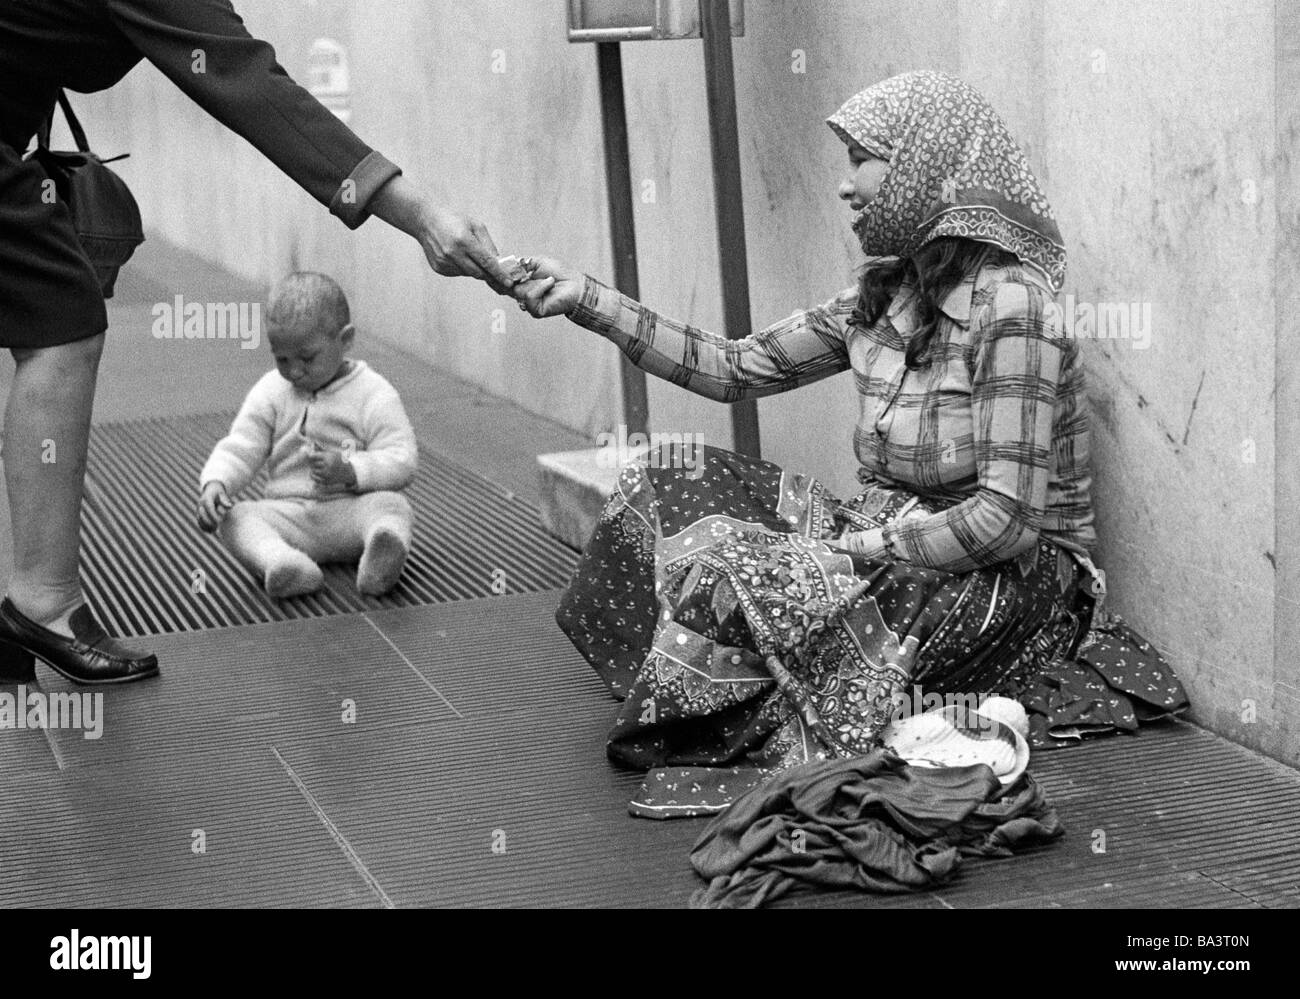 Negli anni settanta, foto in bianco e nero, persone poorness, mendicante-donna si siede sul bordo della strada, il suo bambino gioca su una griglia, una donna presenta la sua un'inezia, di età compresa tra i 25 e i 30 anni di età compresa tra 6 e 12 mesi, Italien, Lombardia, Milano Foto Stock